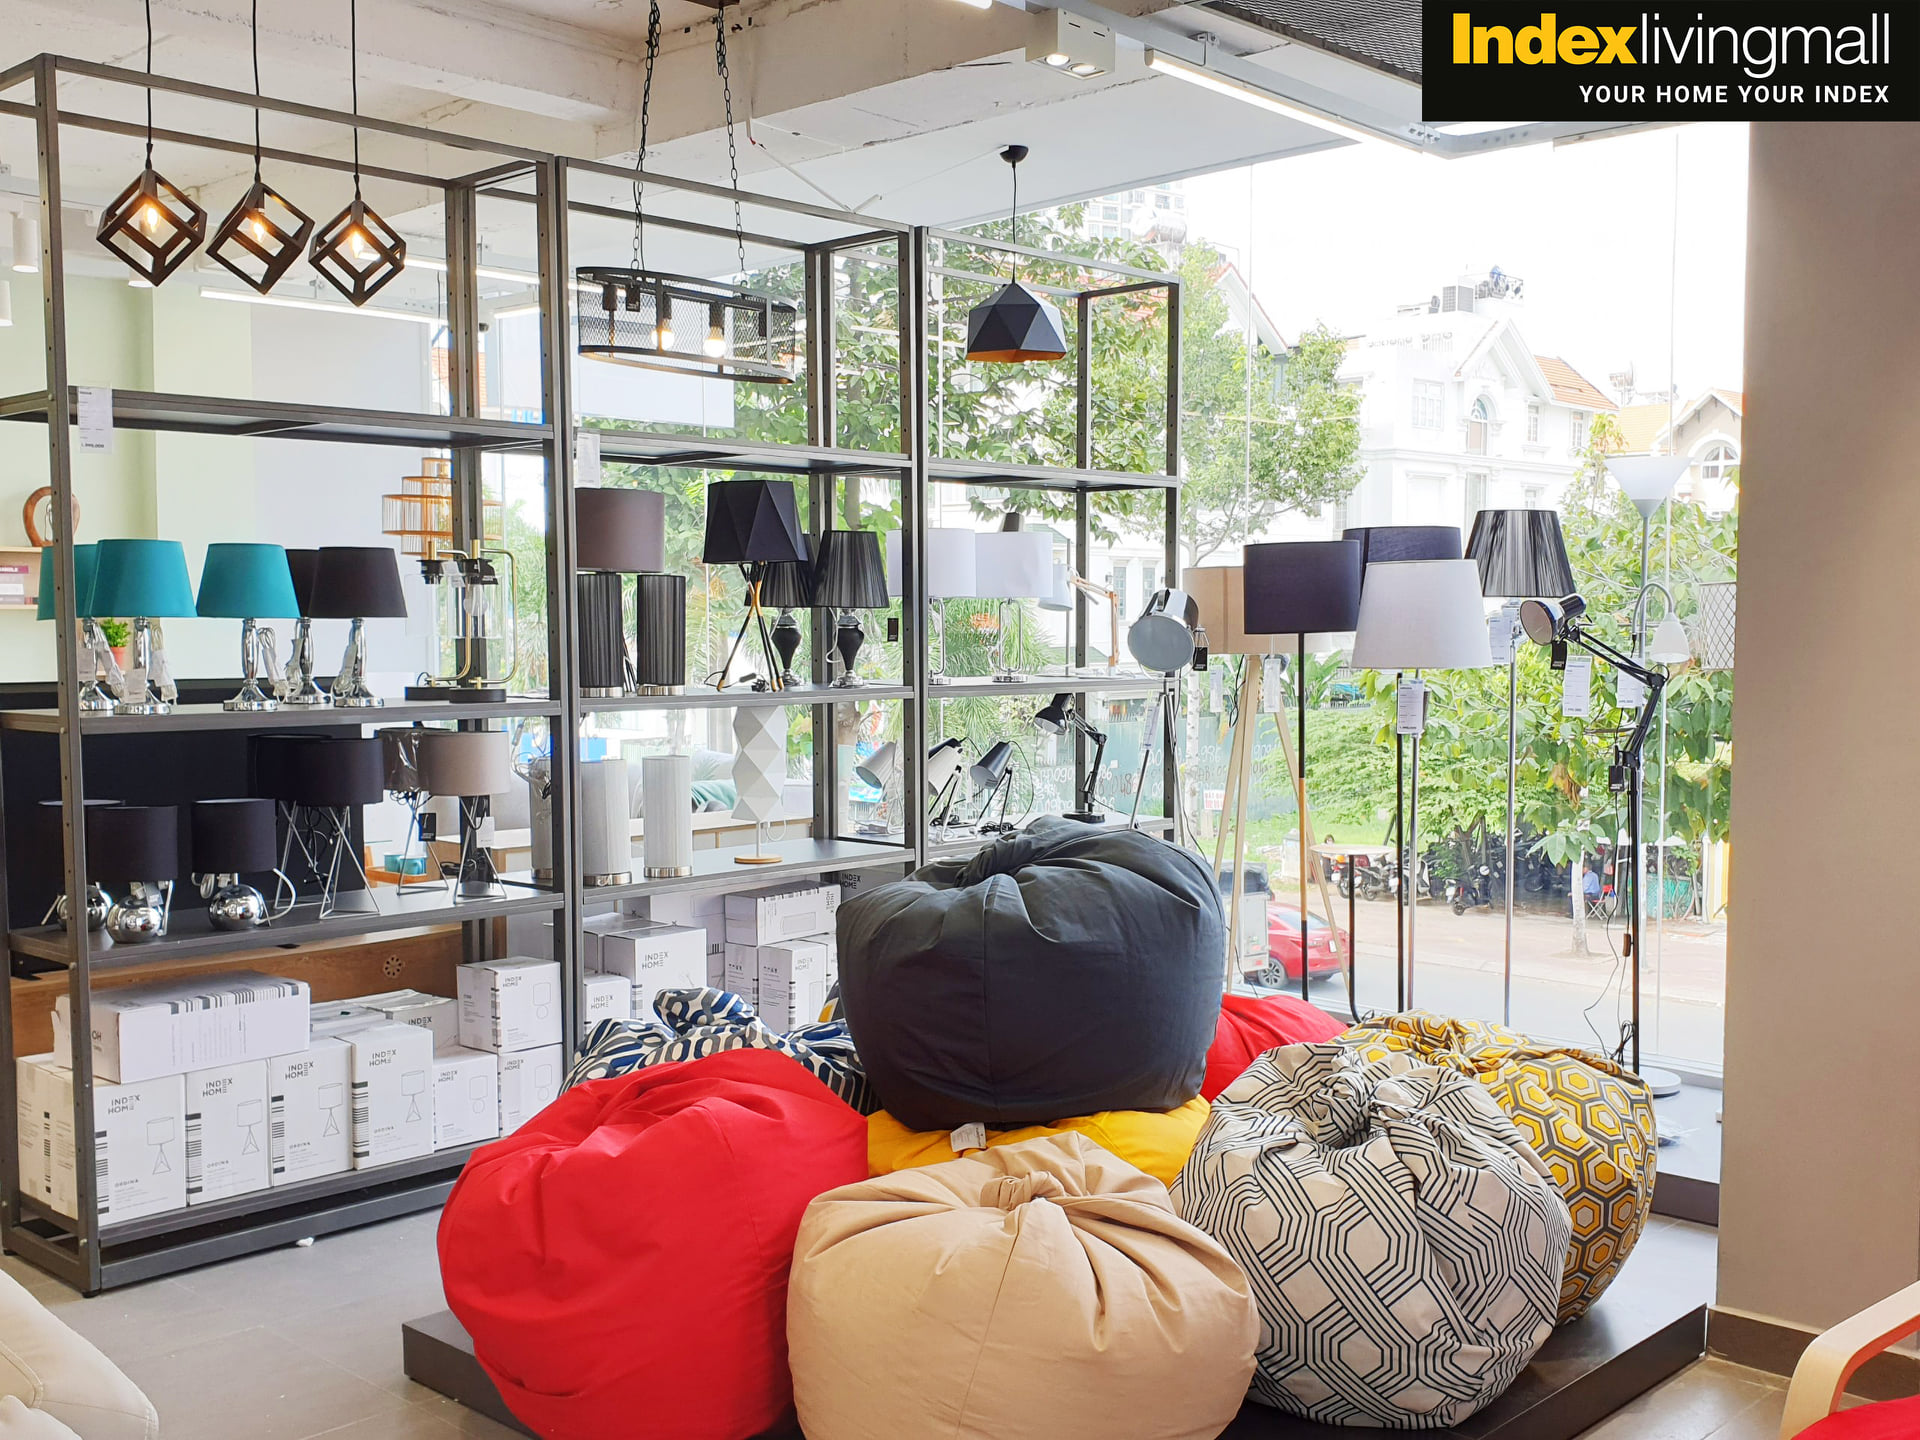 Vỏ gối lười FATINA vải sợi tổng hợp bền chắc, vỏ màu xám đậm đơn giản | Index Living Mall - Phân phối độc quyền tại Việt Nam